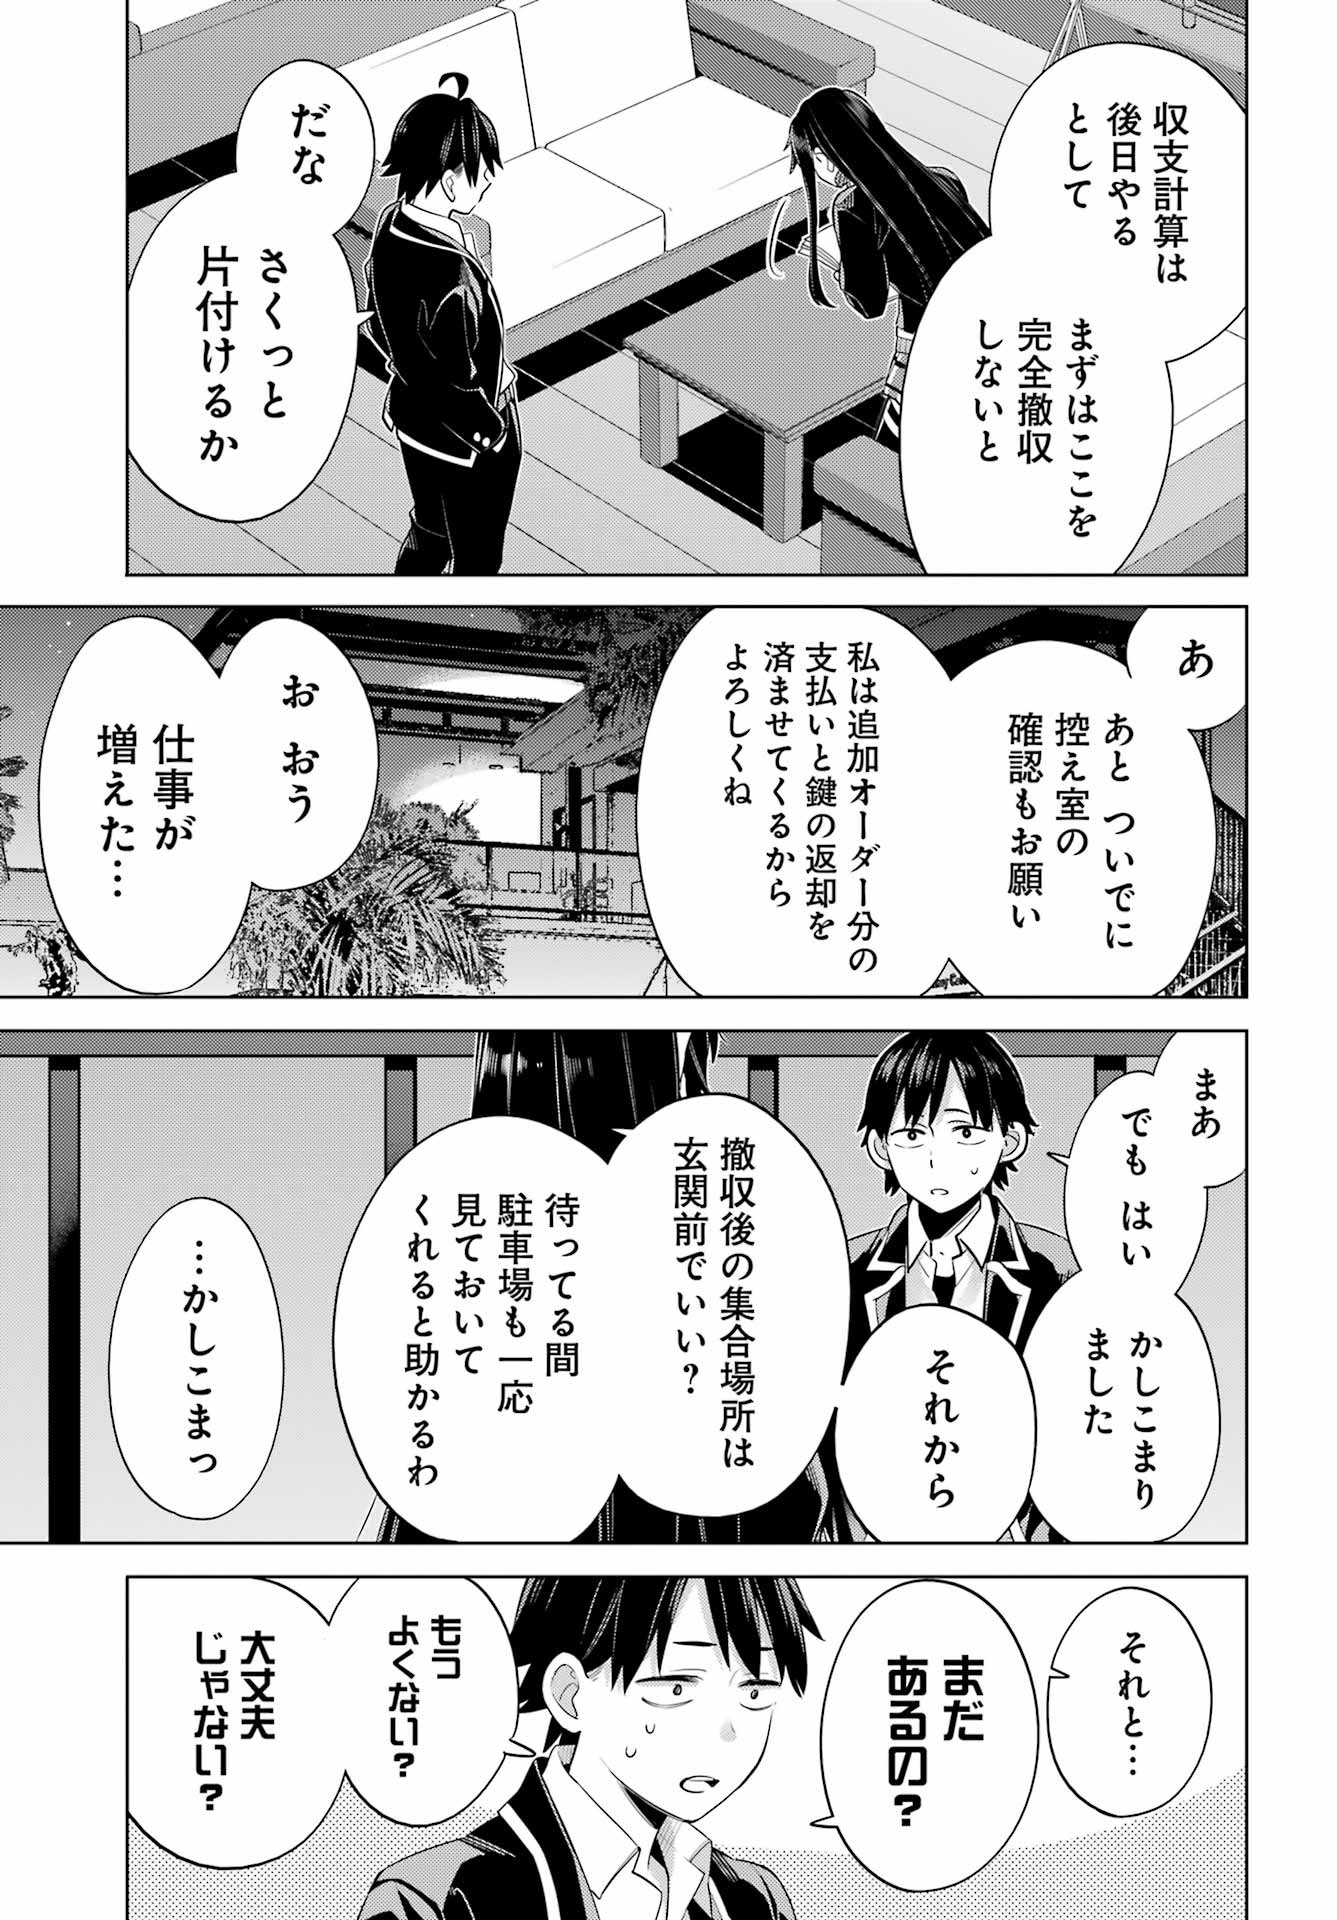 Yahari Ore no Seishun Rabukome wa Machigatte Iru. - Monologue - Chapter FINAL - Page 4